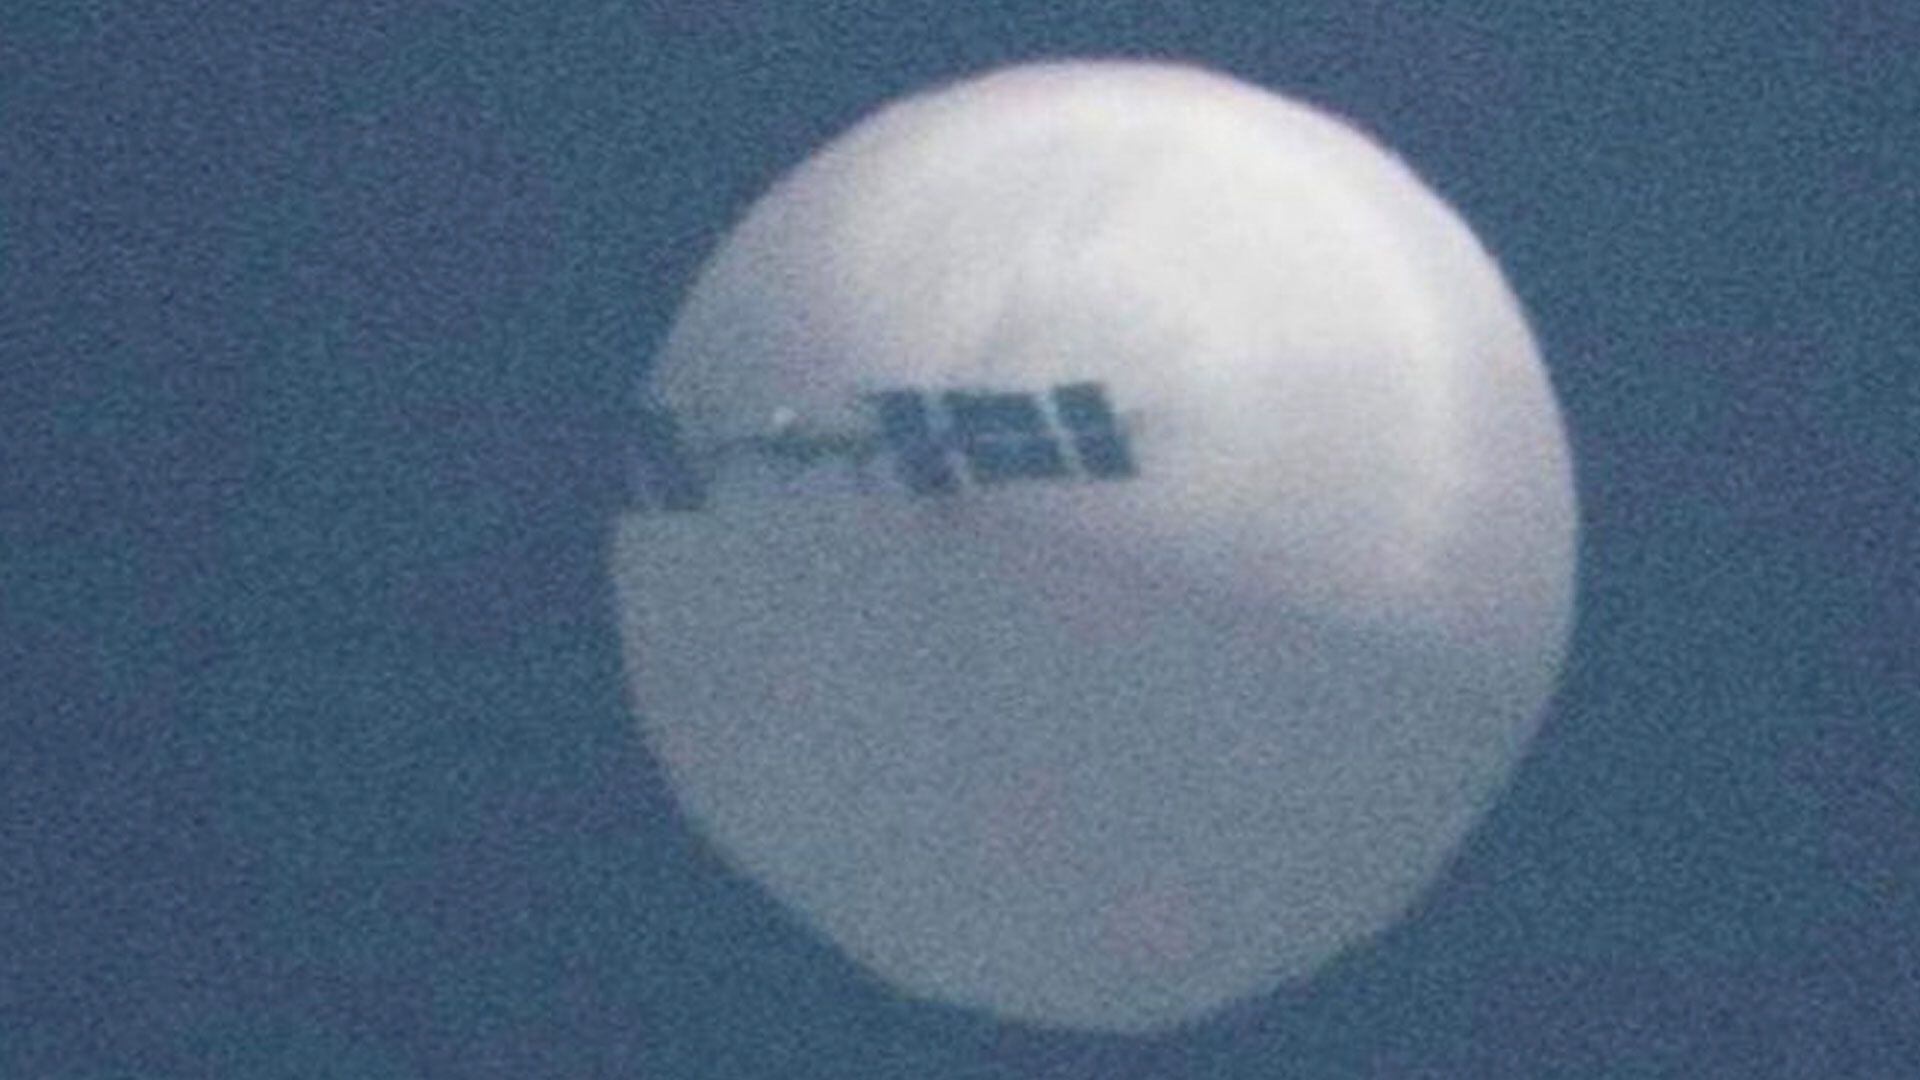 Un globo aerostático chino del tamaño de tres autobuses sobrevuela el noroeste de Estados Unidos. Beijing asegura que es sólo está monitoreando el clima y que fue empujado hacia allí por el viento. (KSVI-TV)